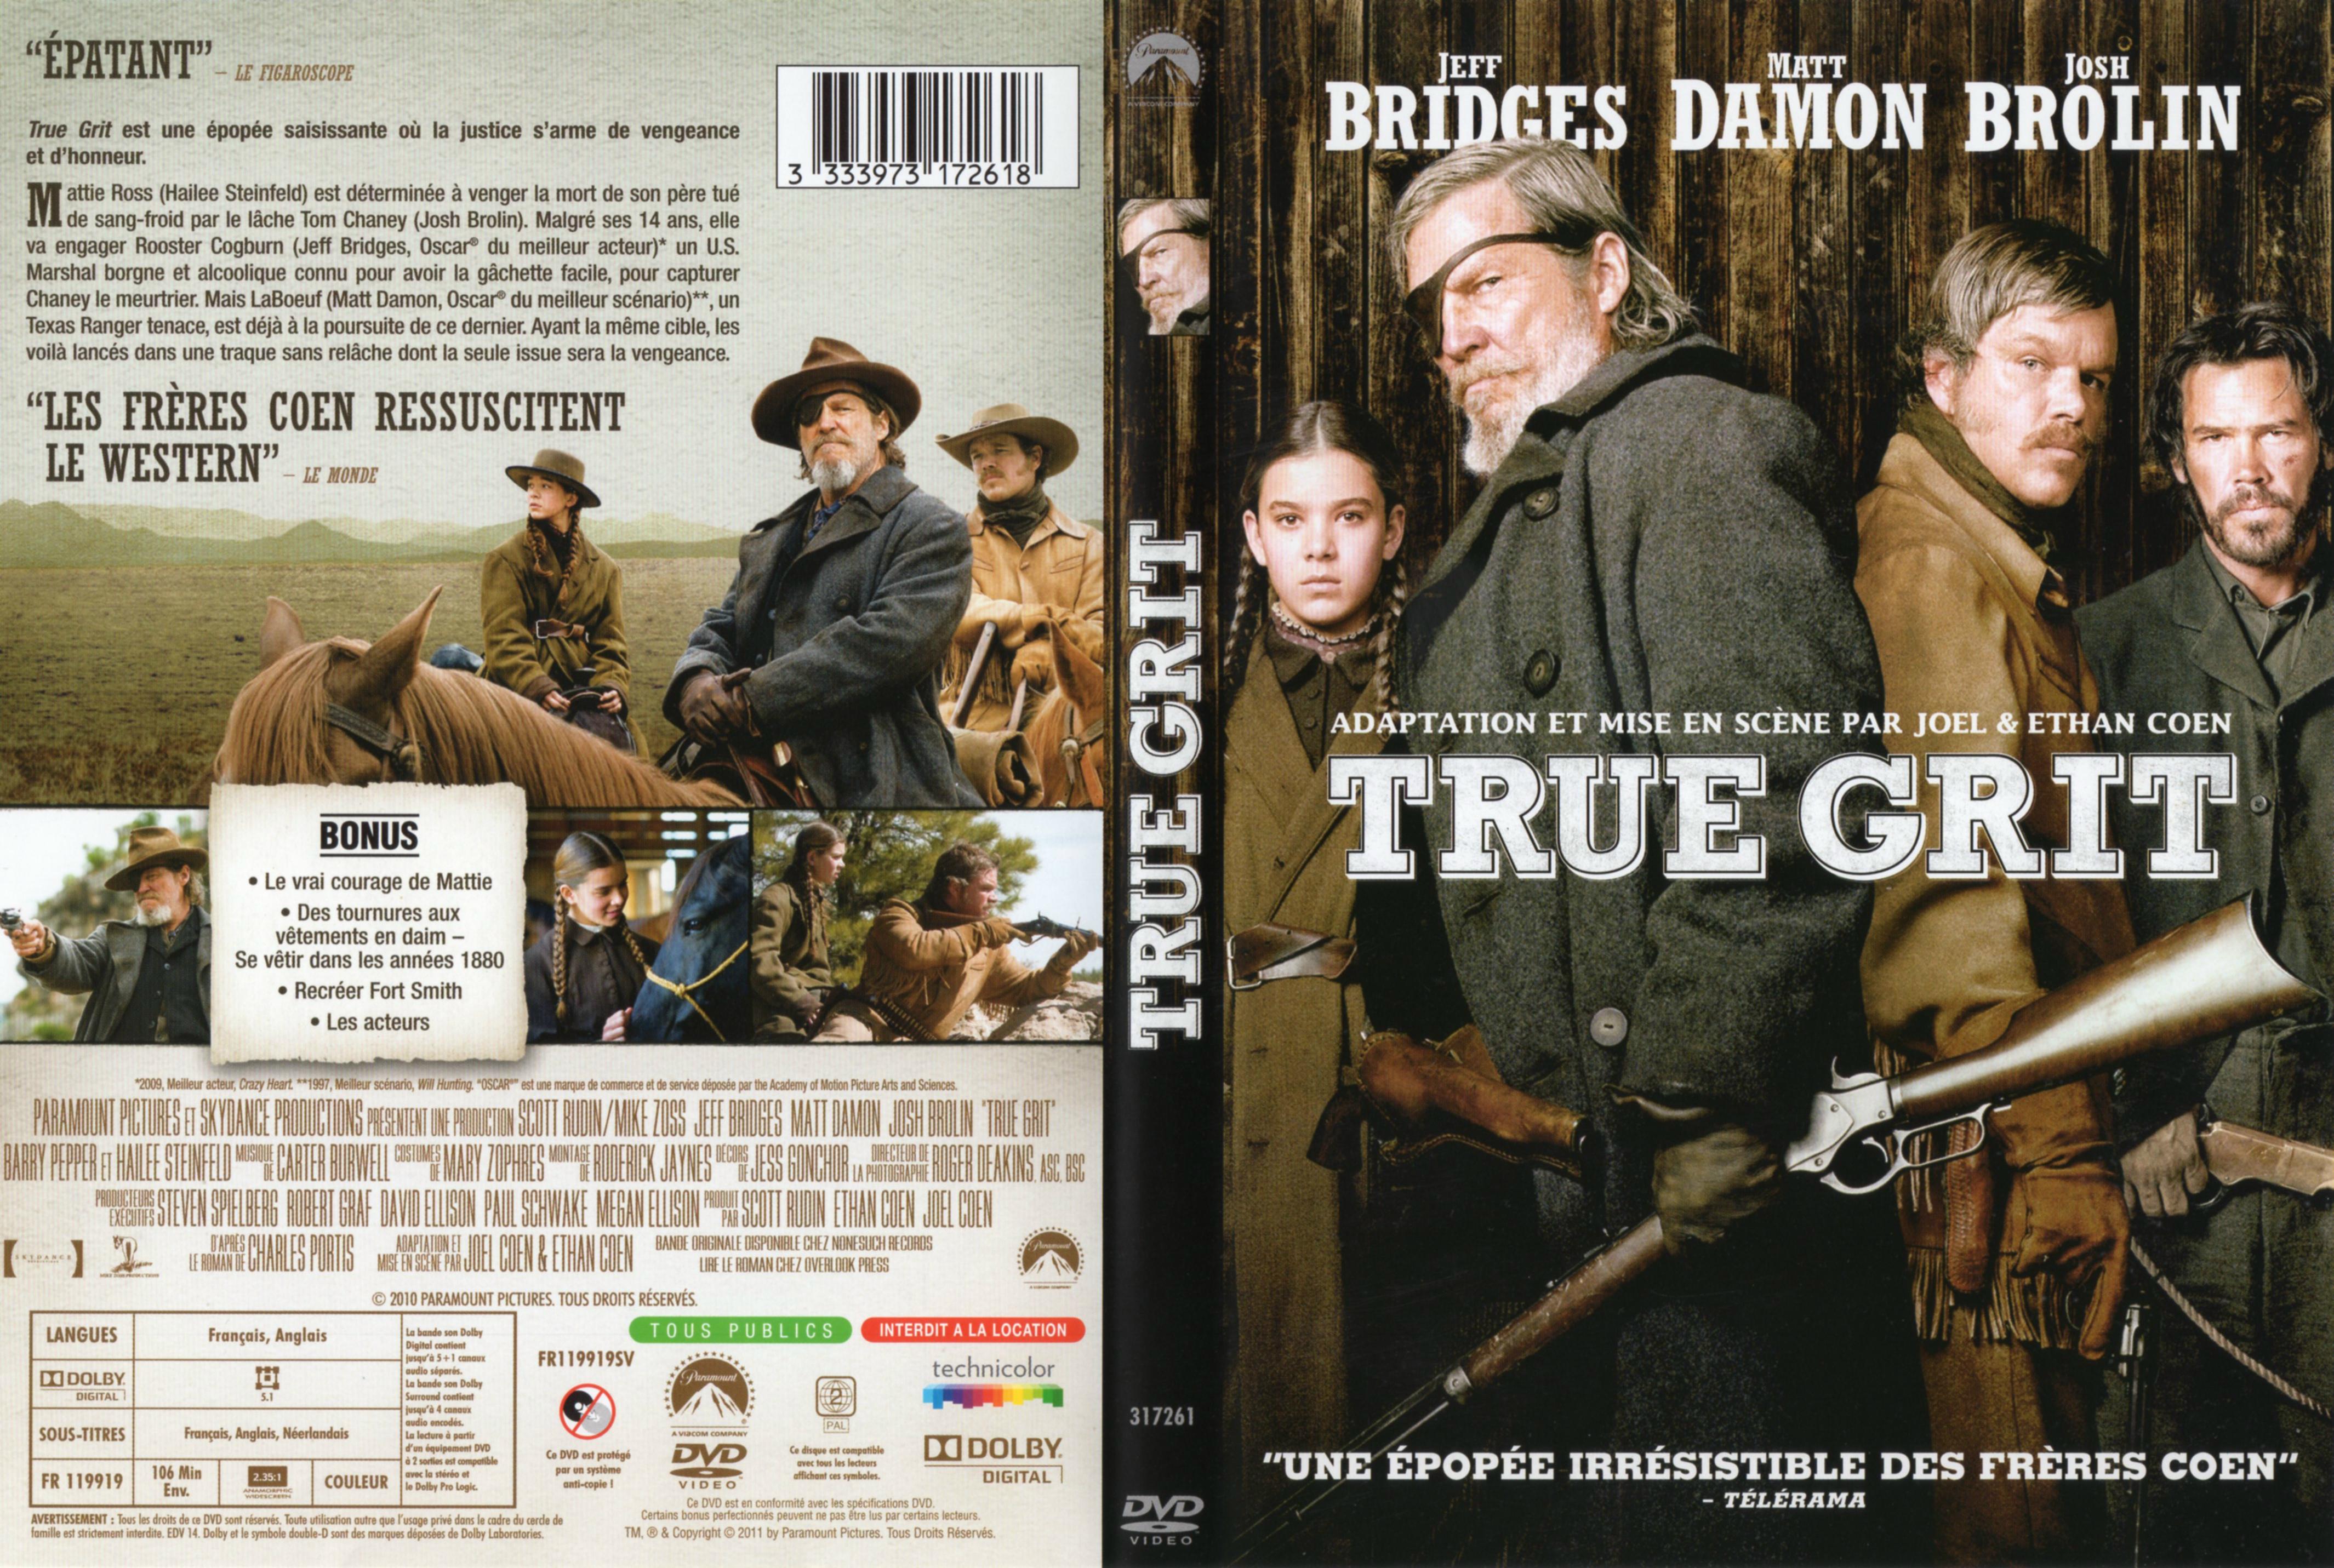 Jaquette DVD True grit (2011)